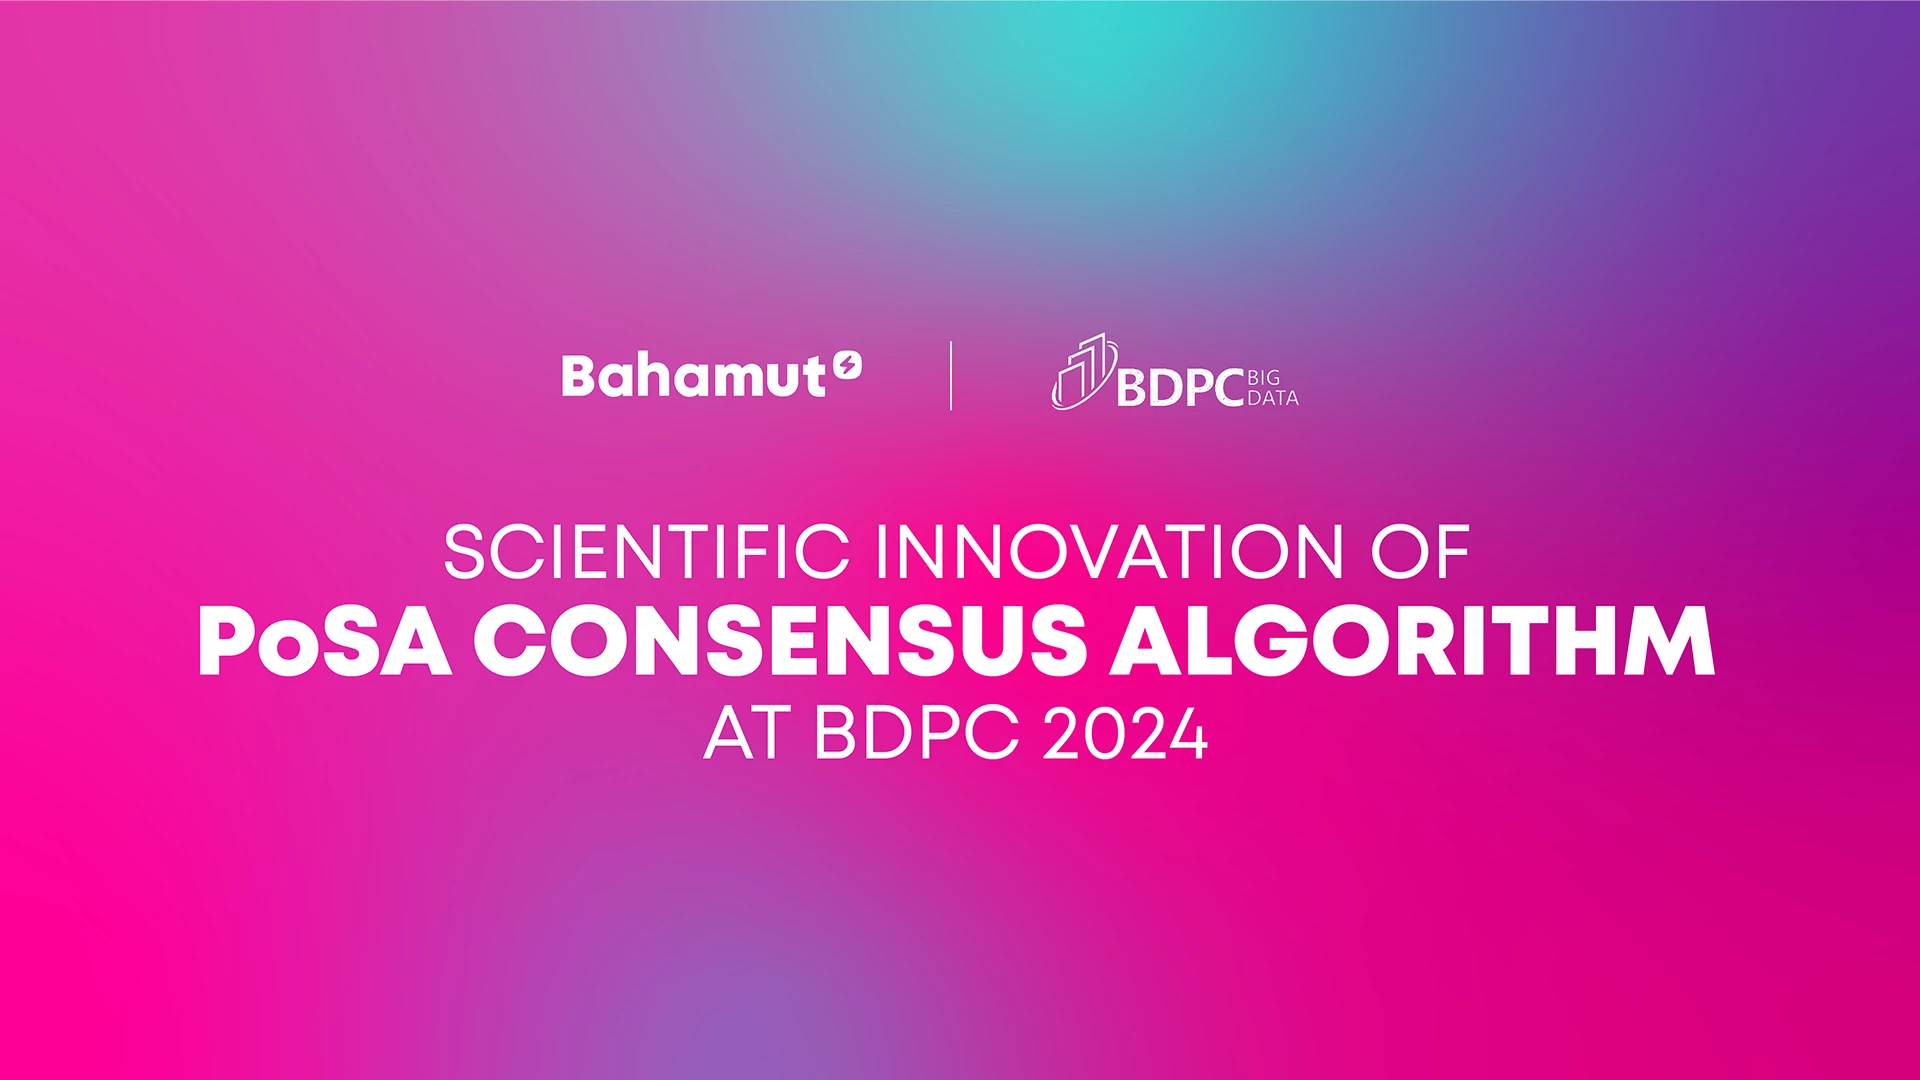 Fastex  содействует научно-инновационной деятельности, при поддержке  PoSA Consensus Algorithm - блокчейна  Bahamut